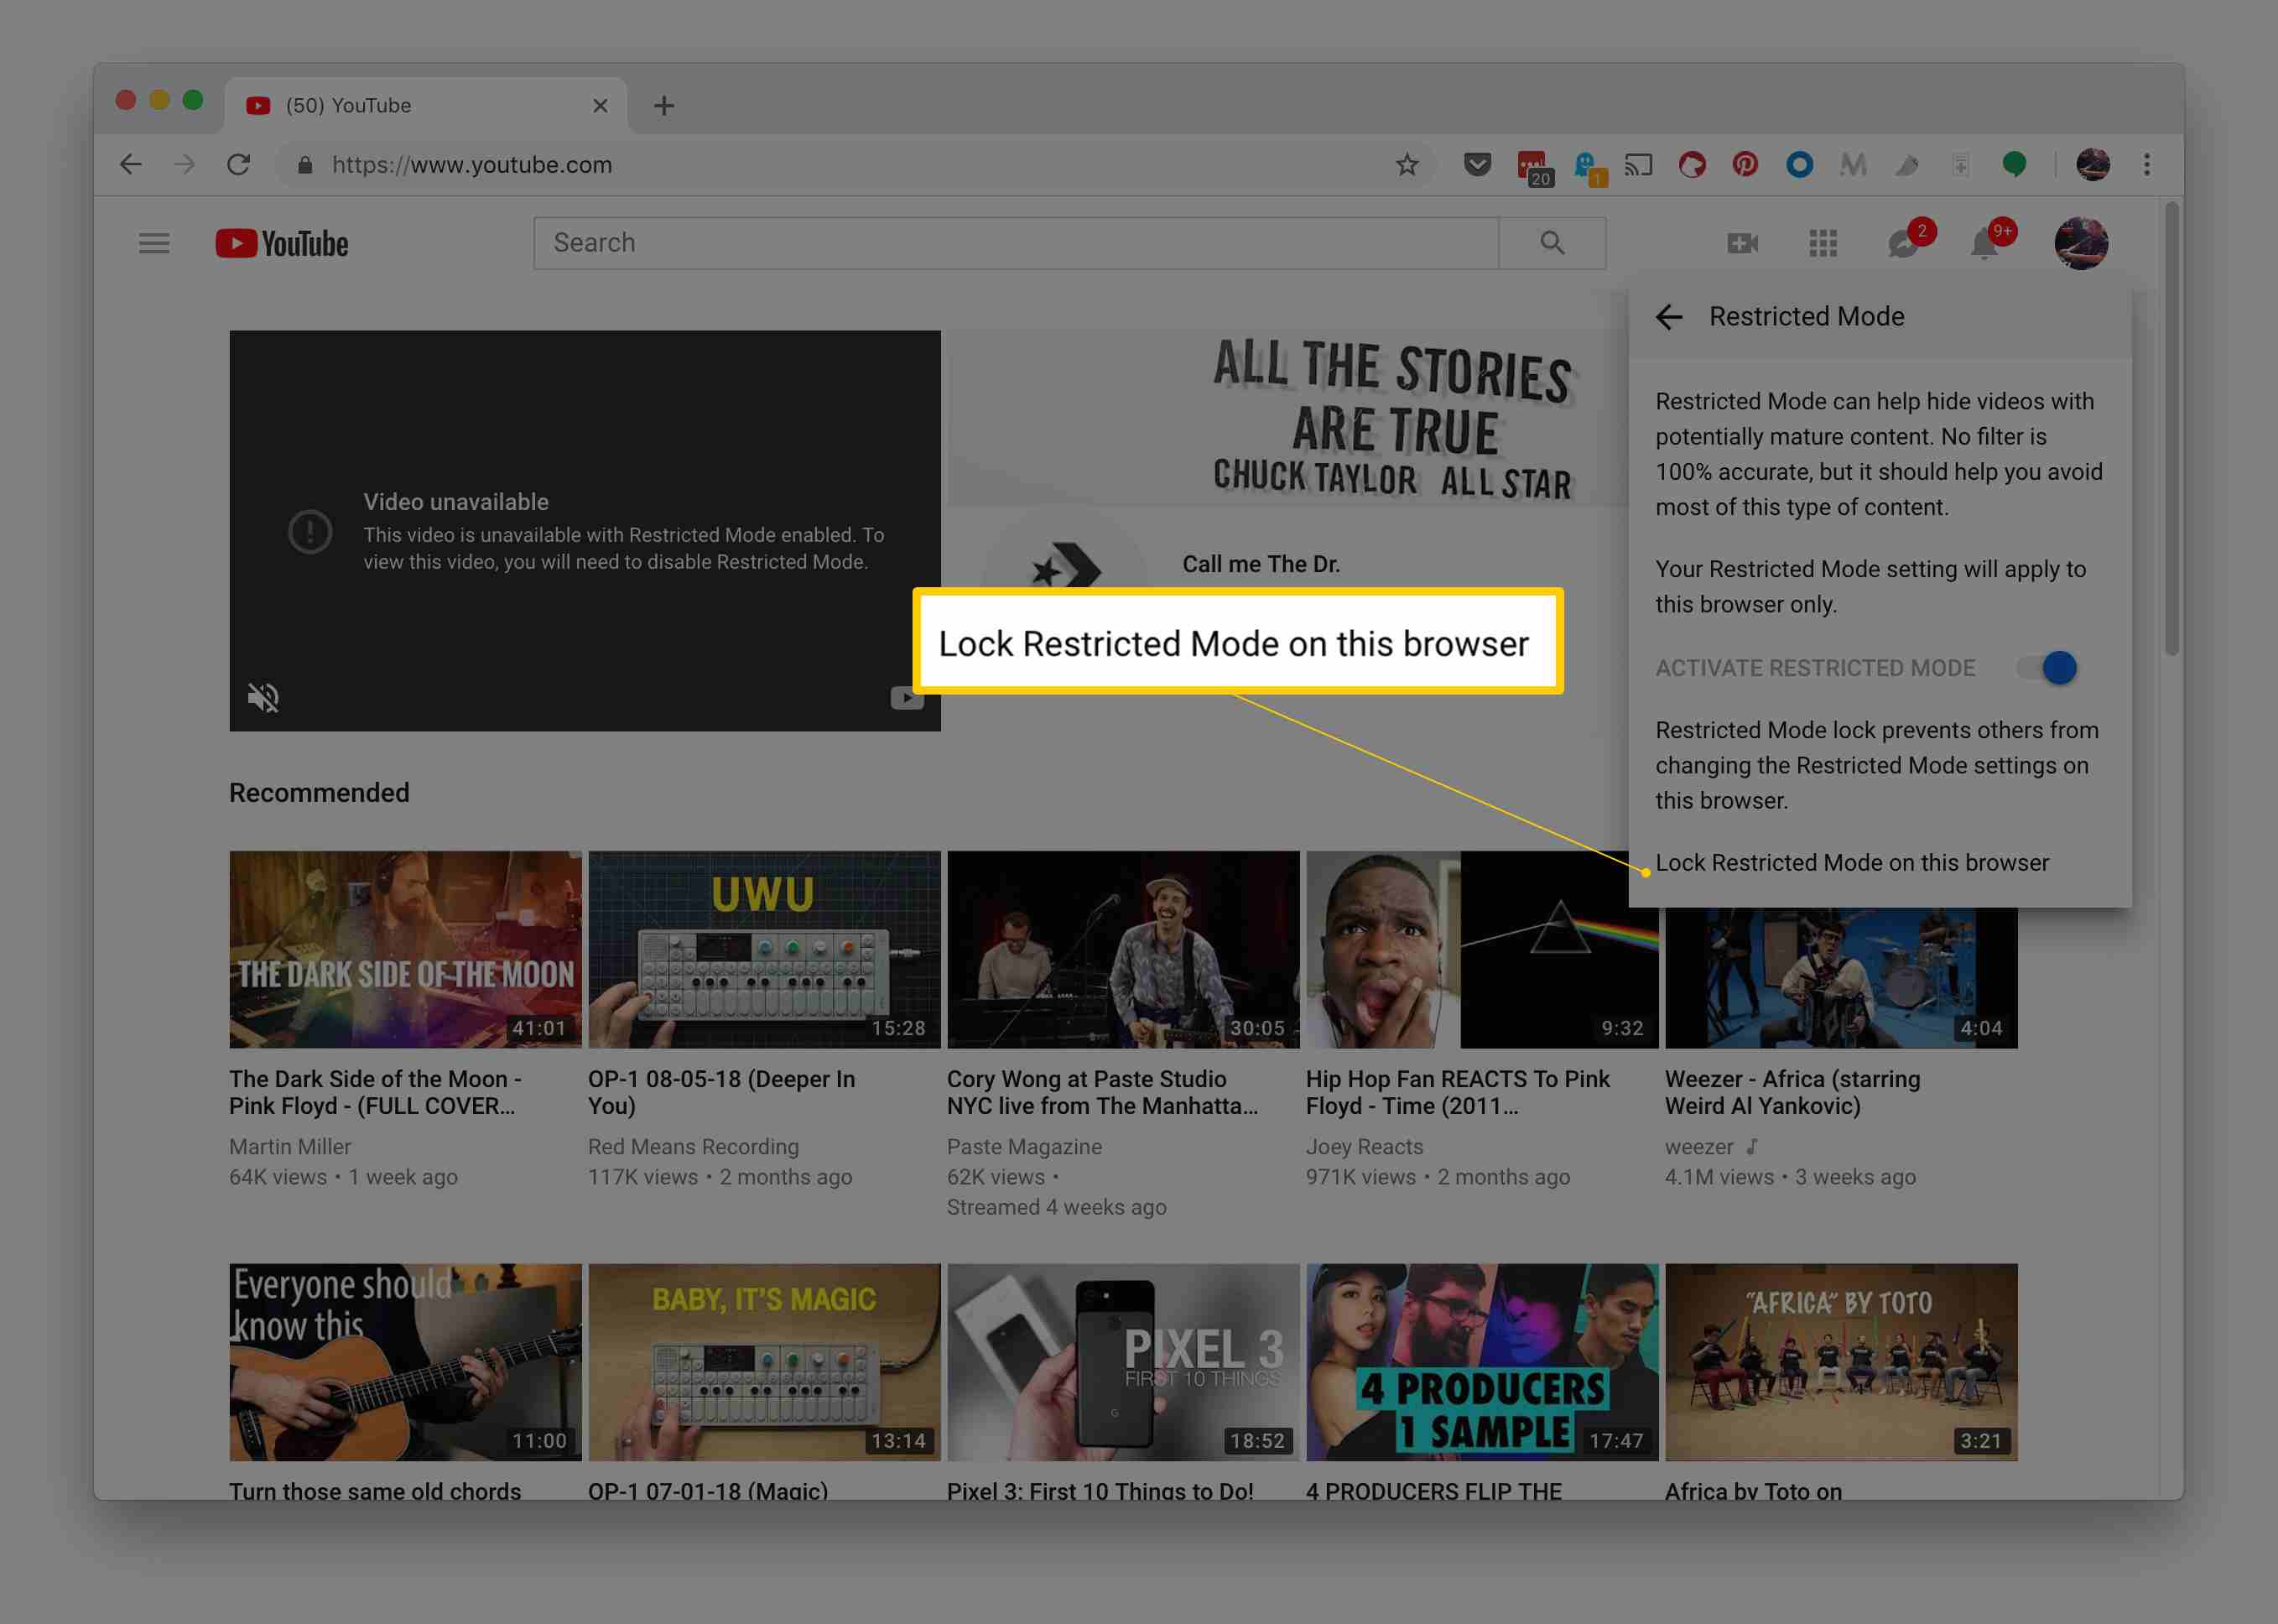 Vergrendel de beperkte modus op deze browserlink in het instellingenmenu van de beperkte modus van YouTube